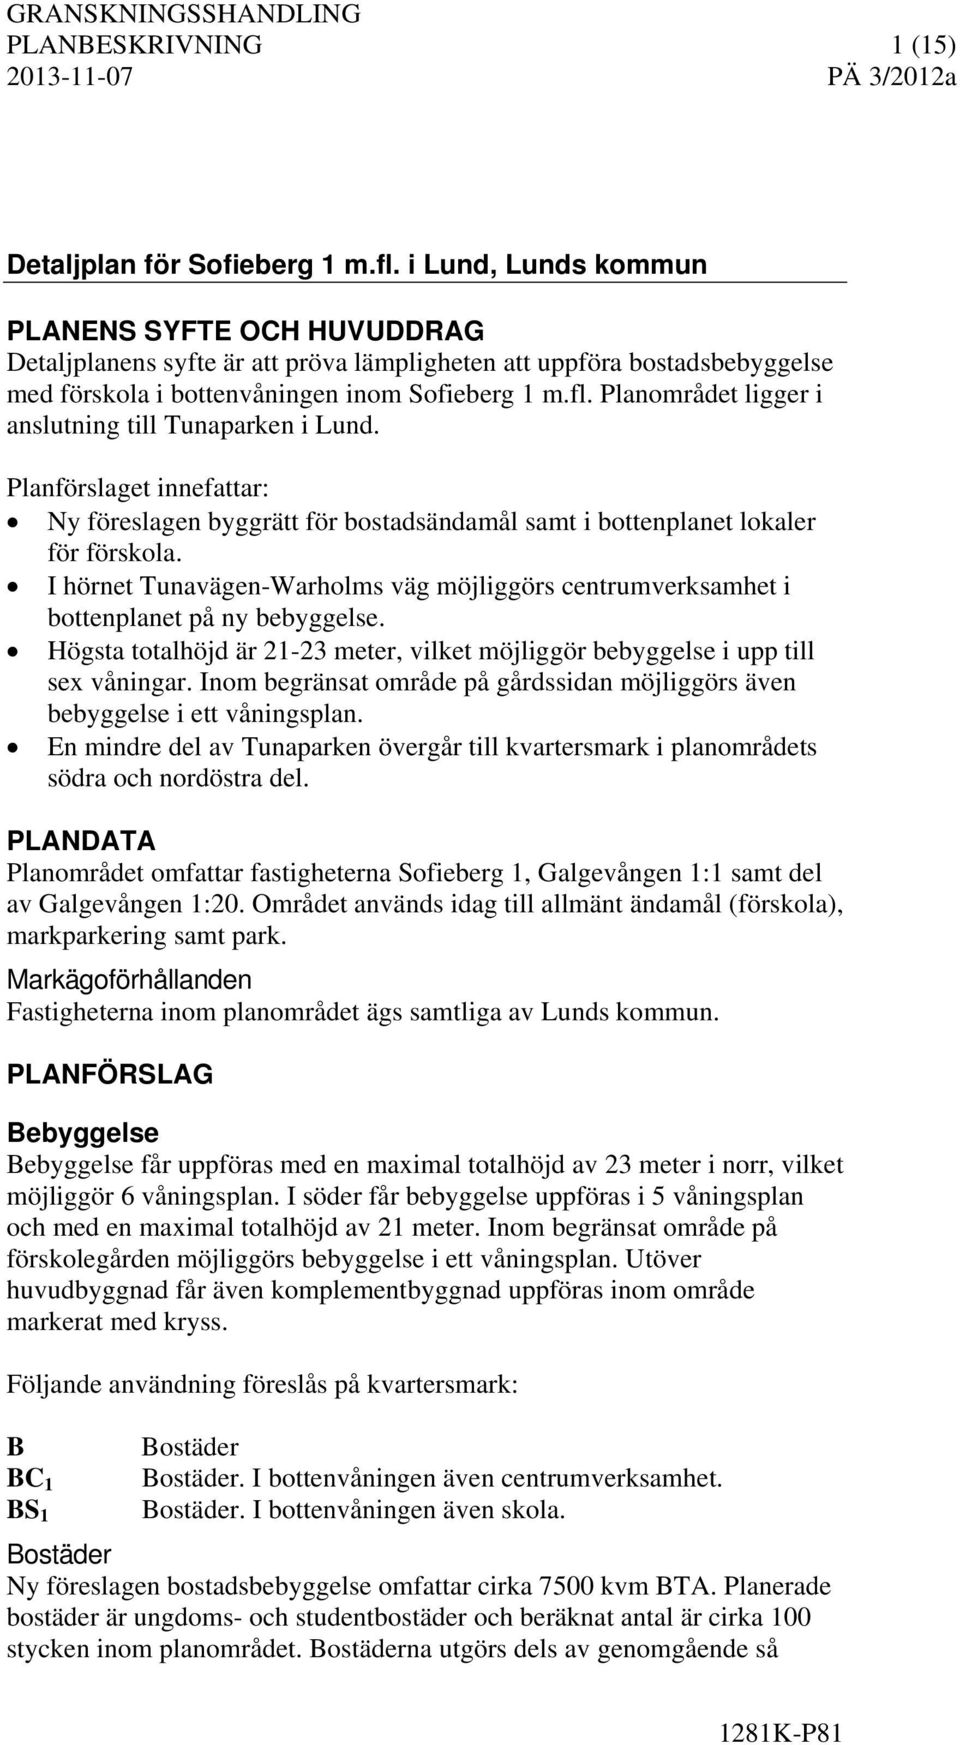 Planområdet ligger i anslutning till Tunaparken i Lund. Planförslaget innefattar: Ny föreslagen byggrätt för bostadsändamål samt i bottenplanet lokaler för förskola.